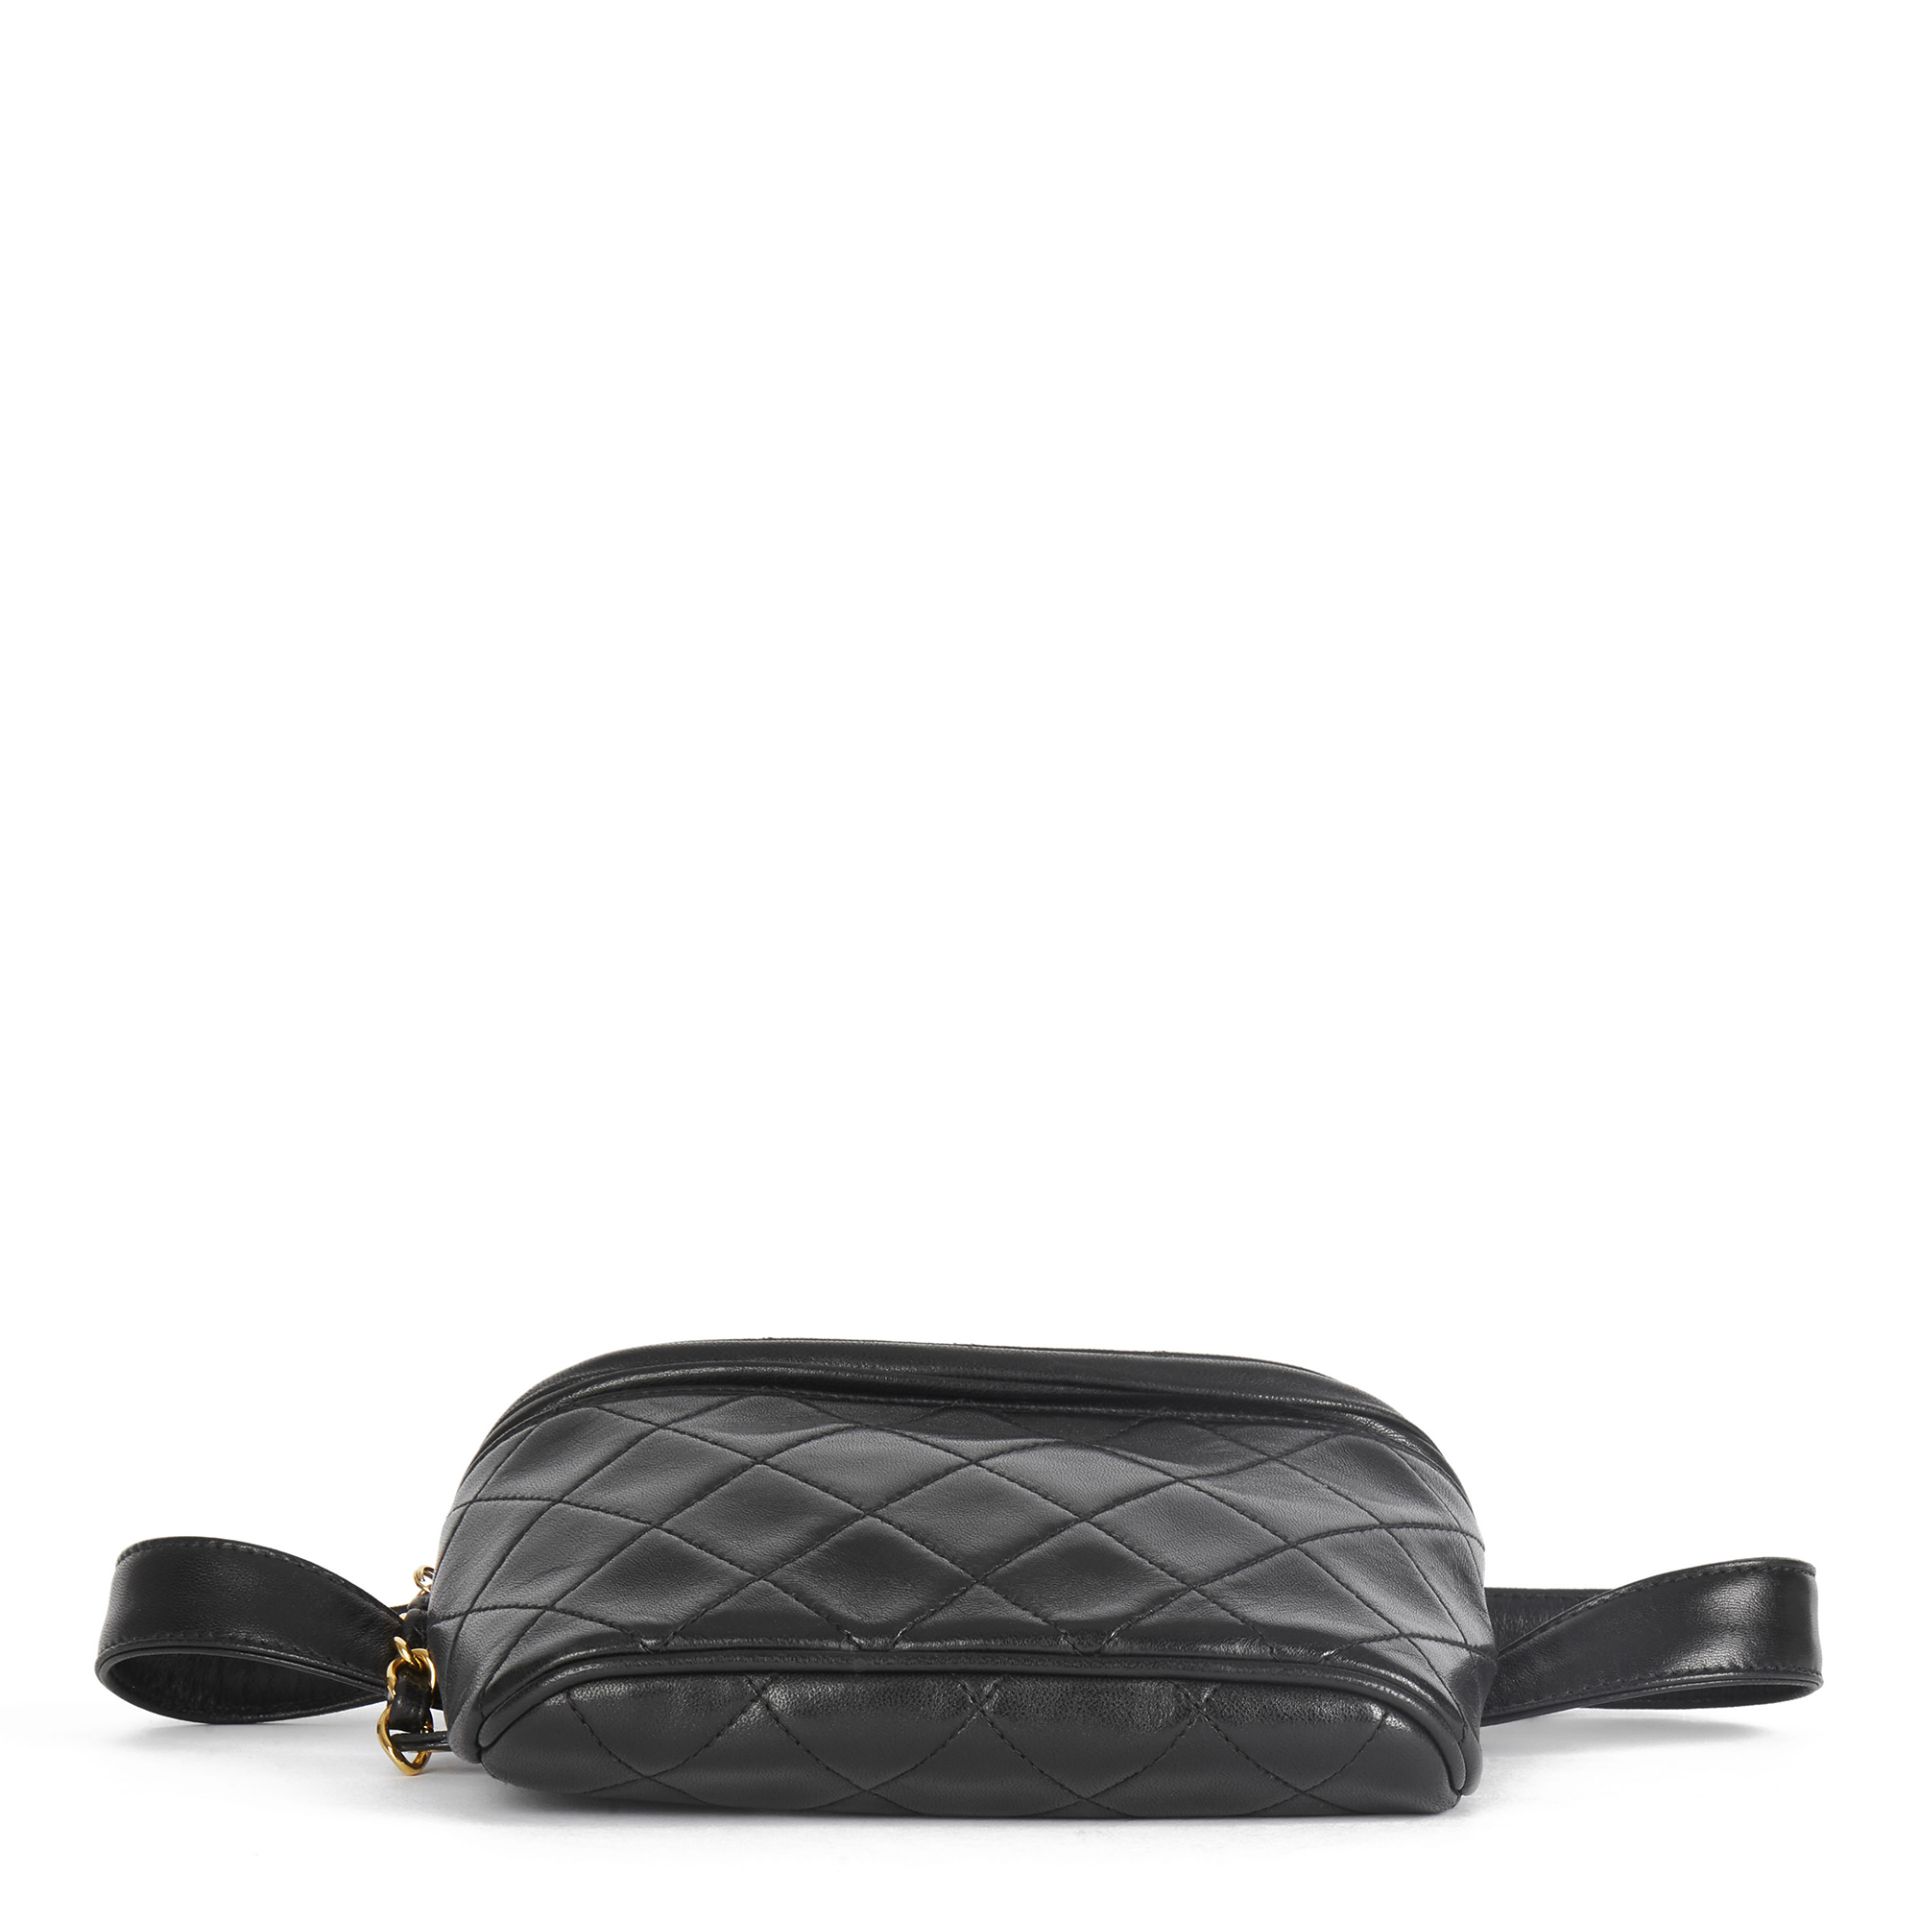 Chanel Black Quilted Lambskin Vintage Timeless Belt Bag - Image 9 of 12